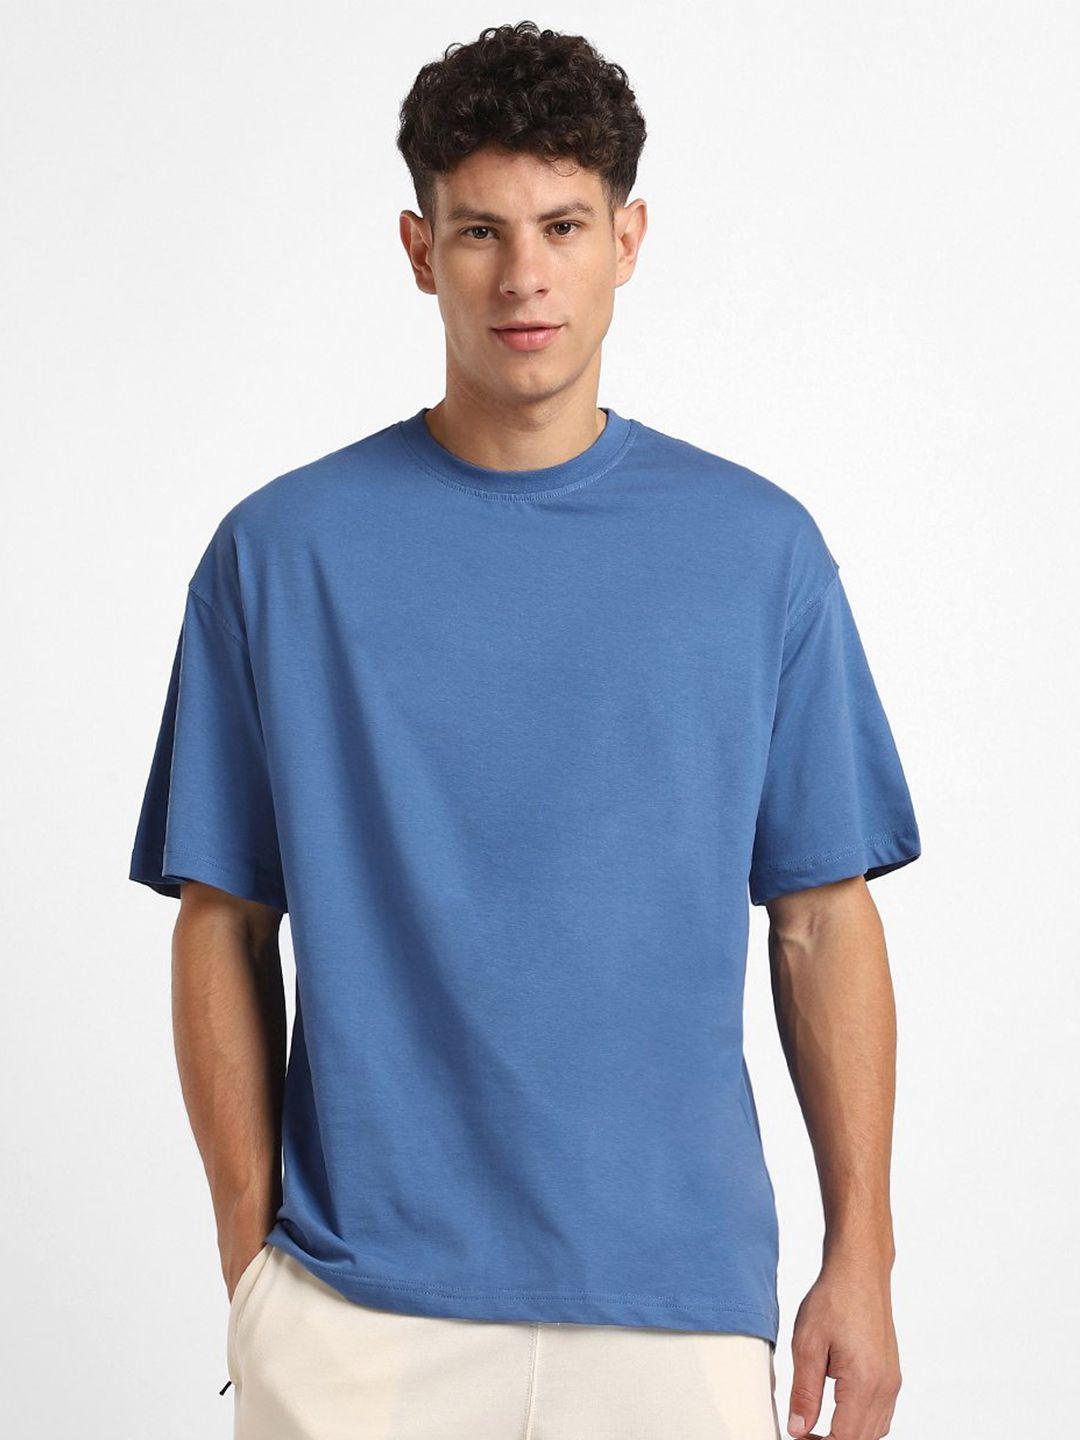 nobero round neck short sleeves oversized cotton t-shirt